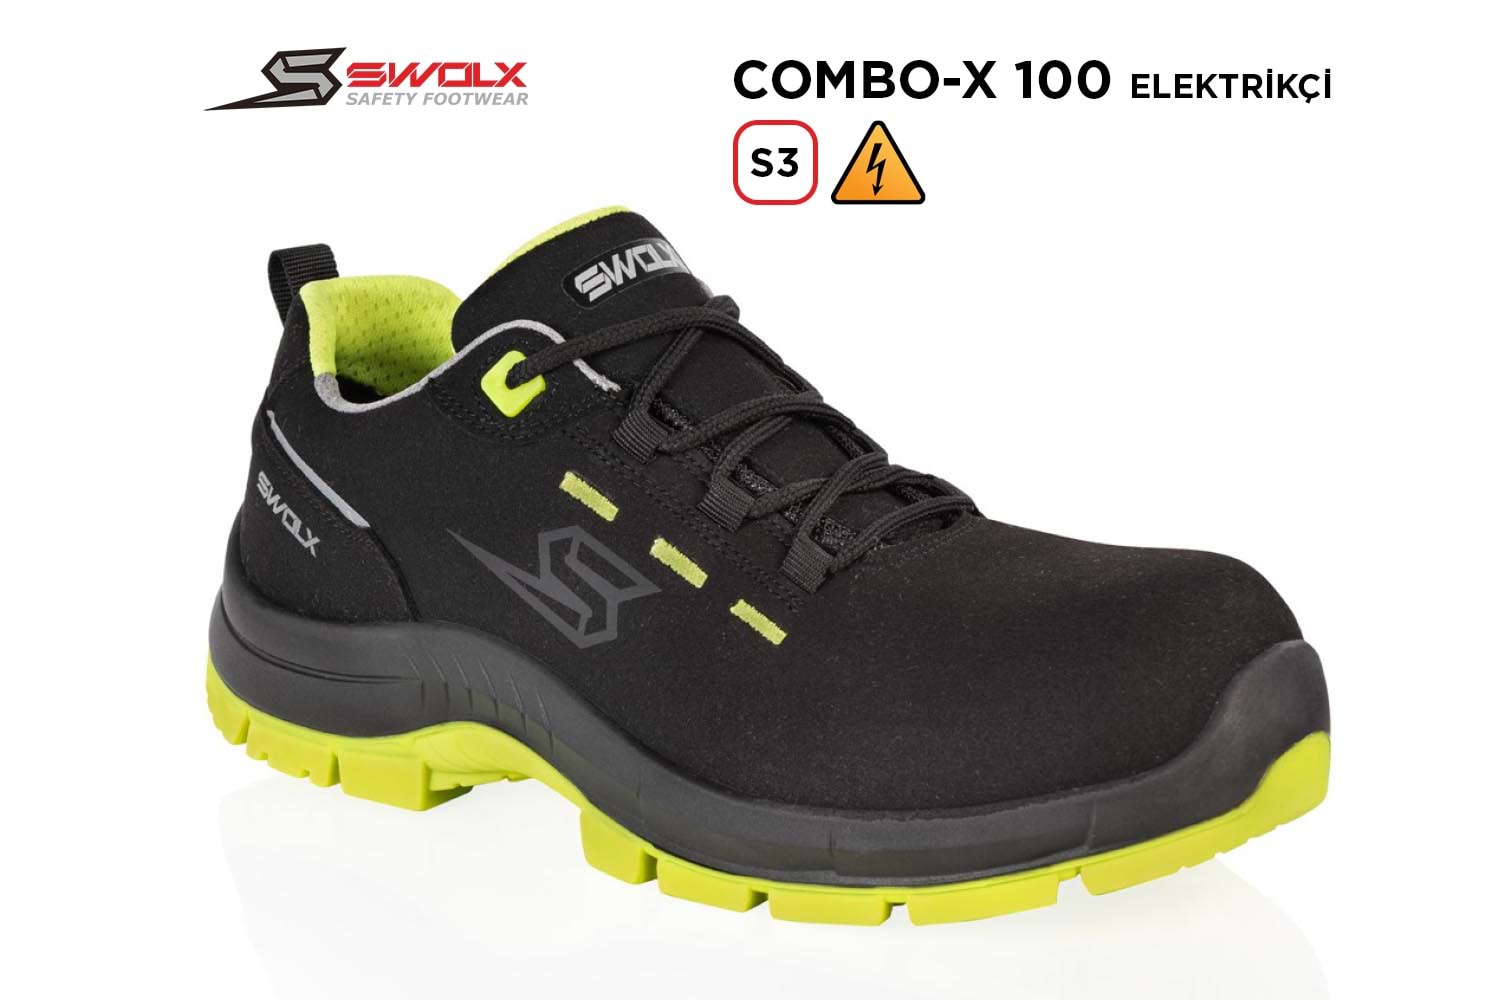 Swolx İş Ayakkabısı - Combo-X 100 S3 Elektrikçi - 38